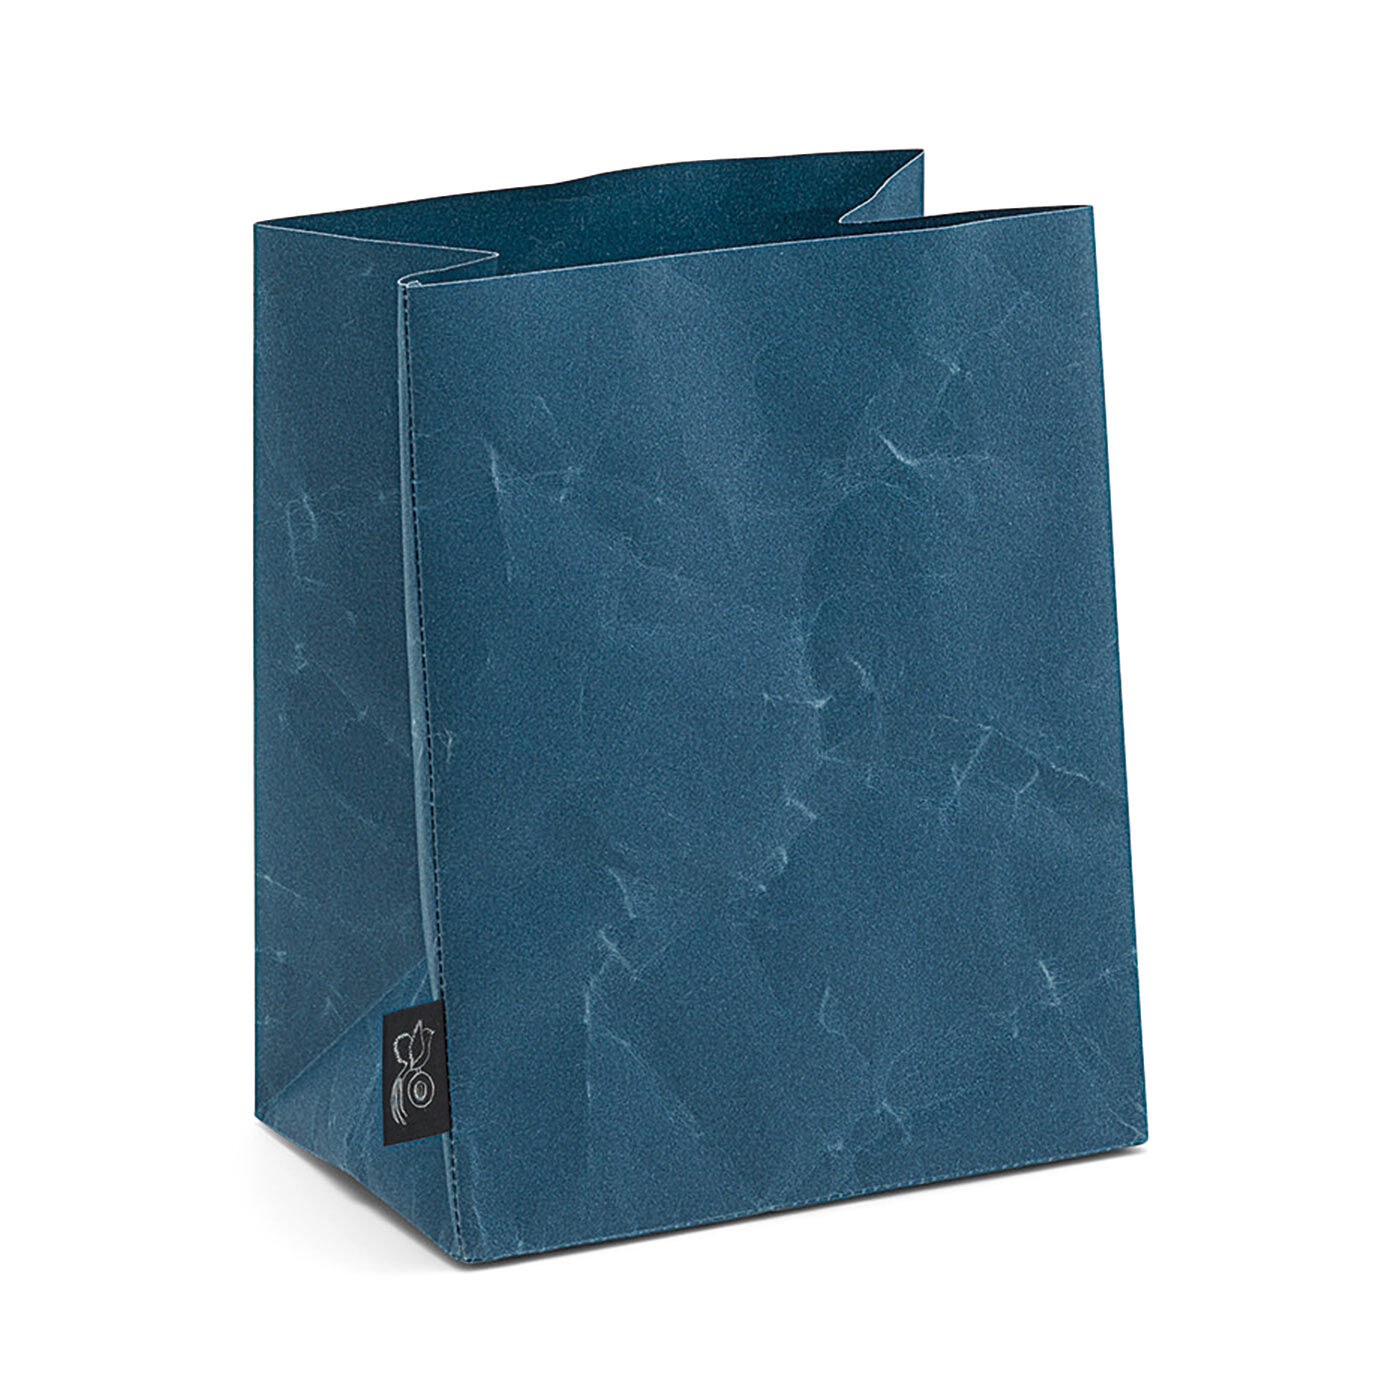 SAANA JA OLLI|サーナ ヤ オッリ×naoron　千年の歴史にふれる　和紙の技法を受け継ぐストレージバッグの会|〈藍色〉